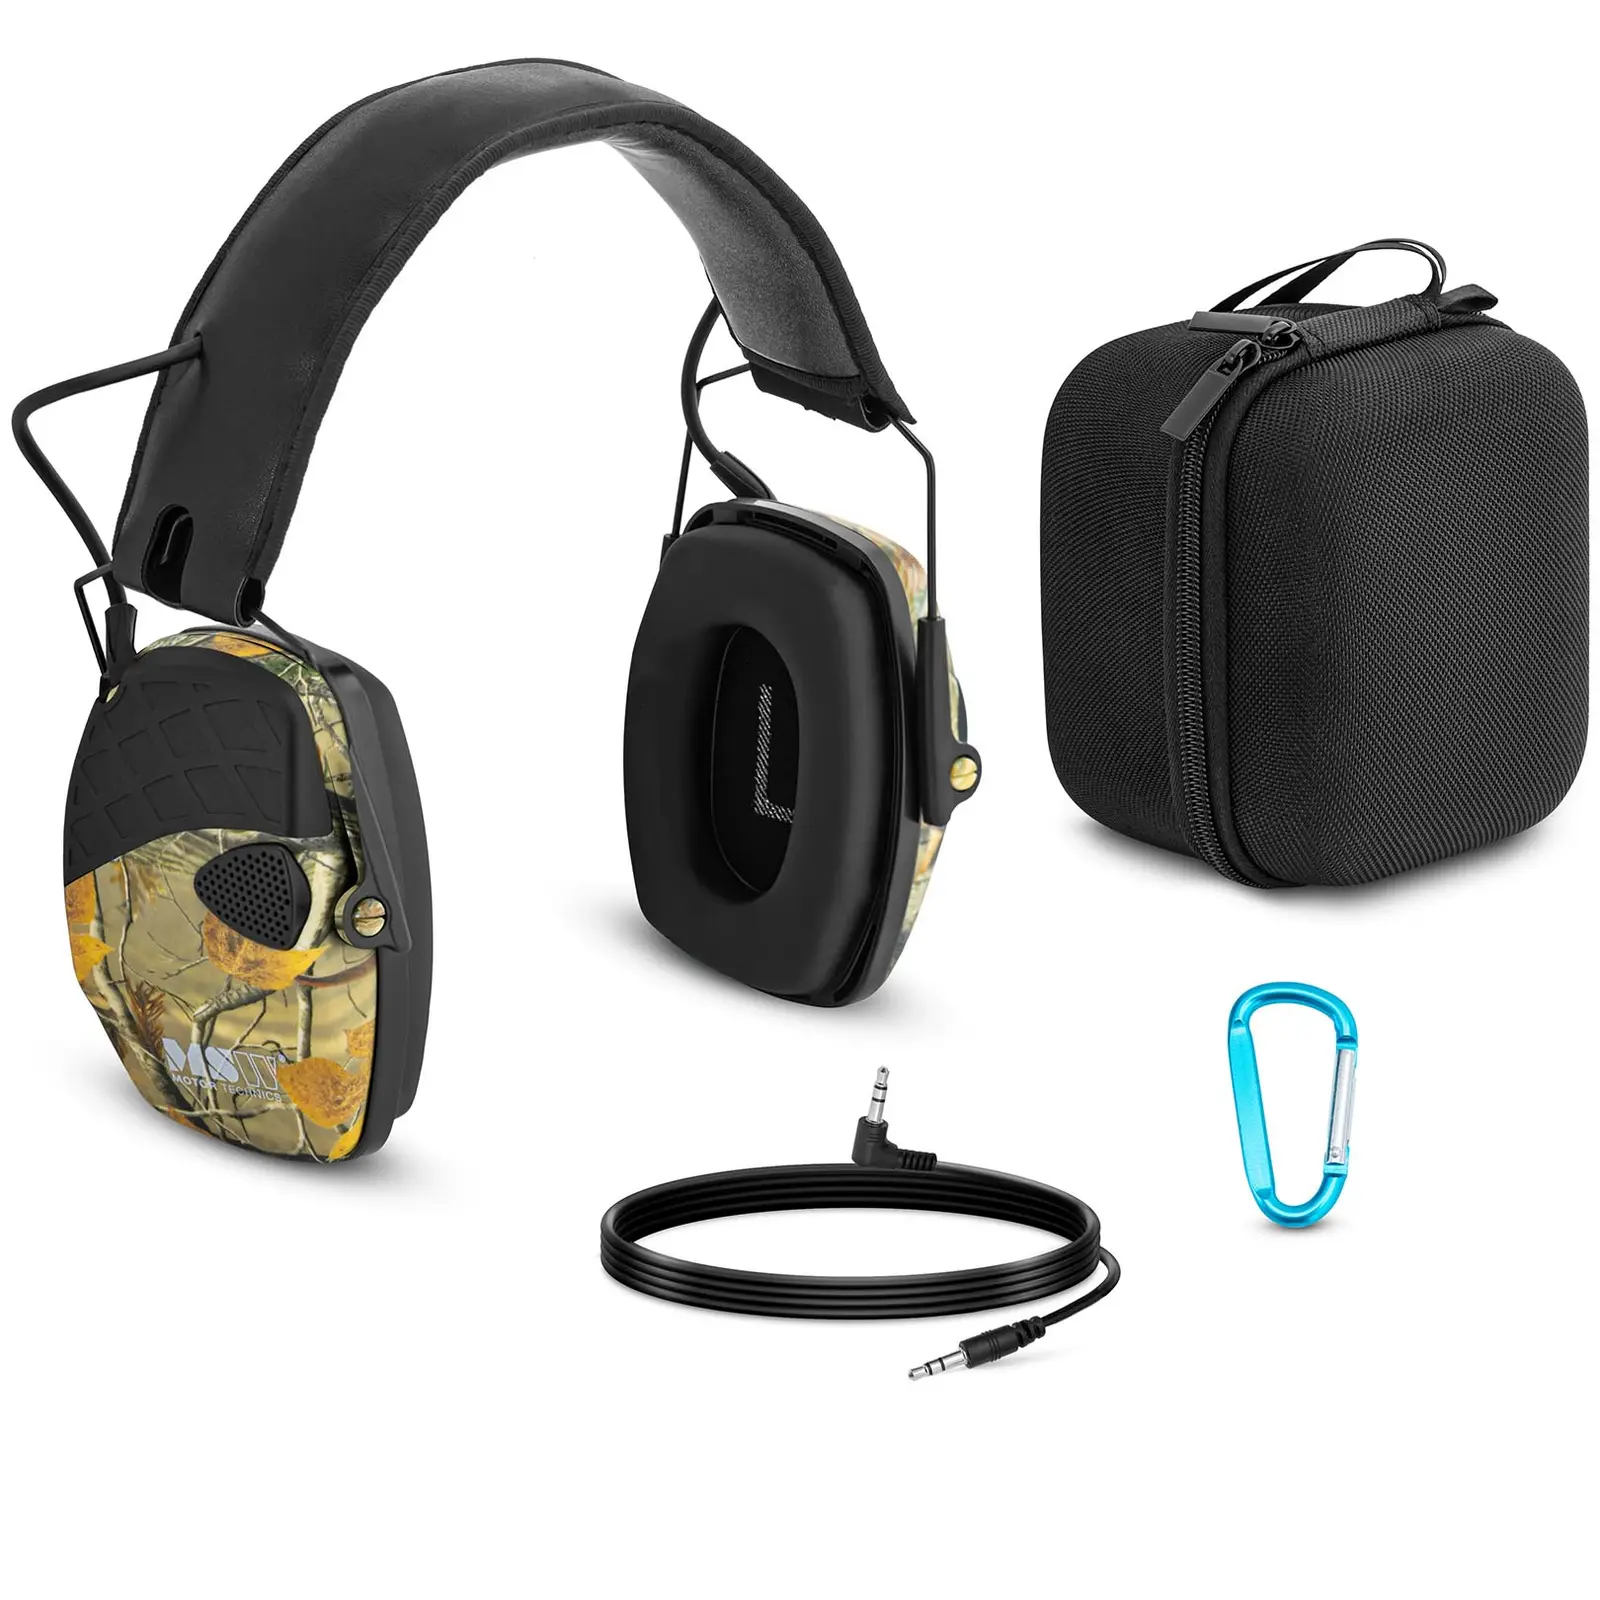 Protección auditiva - control dinámico de ruido externo - camuflaje